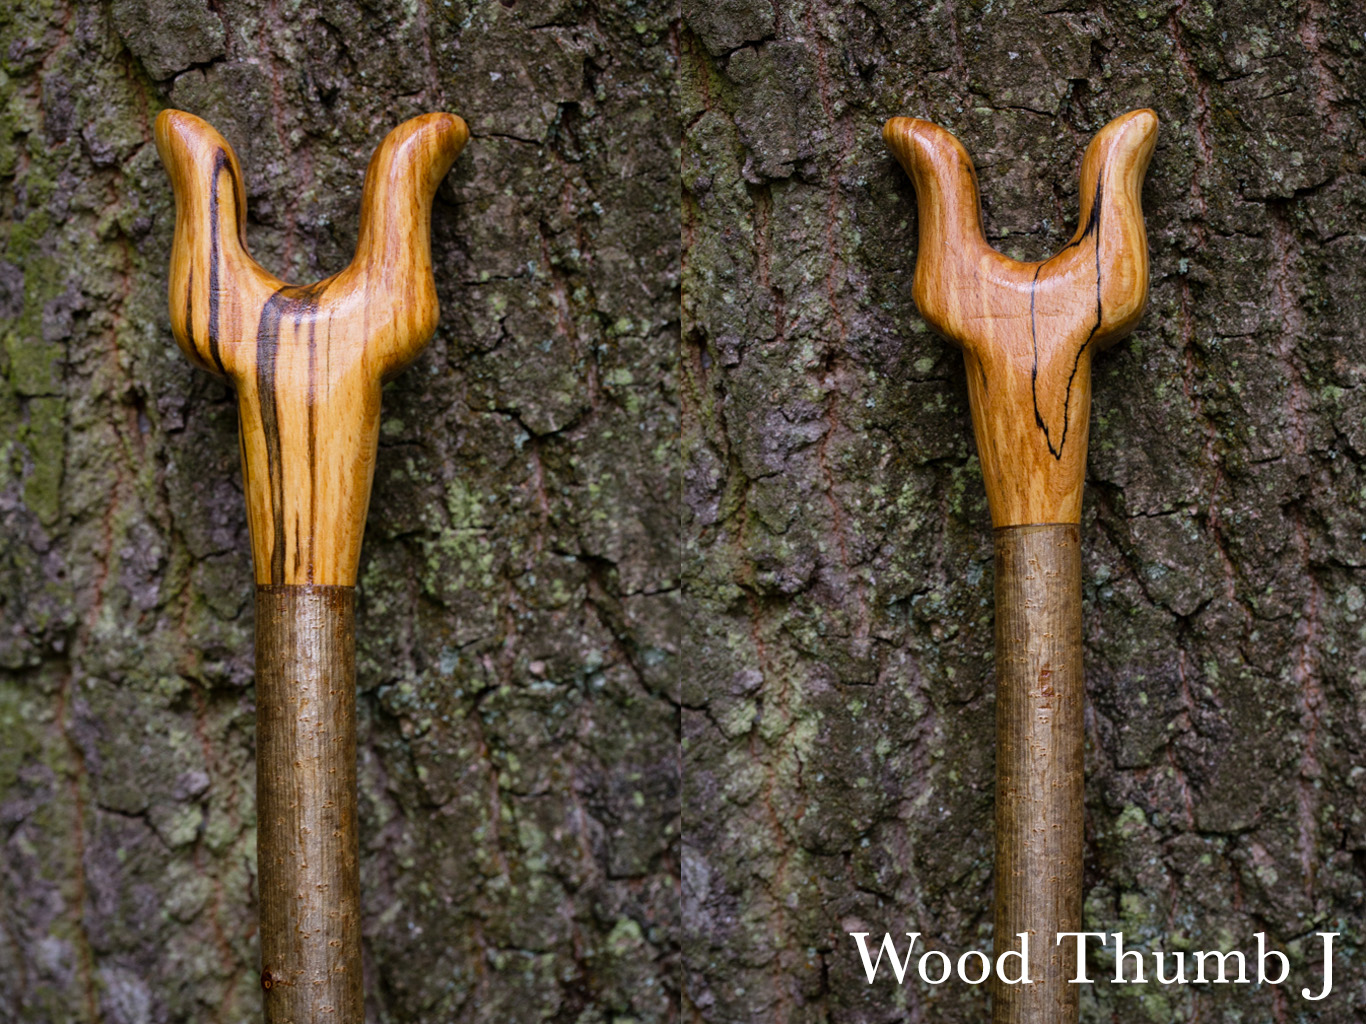 J Wood Thumb